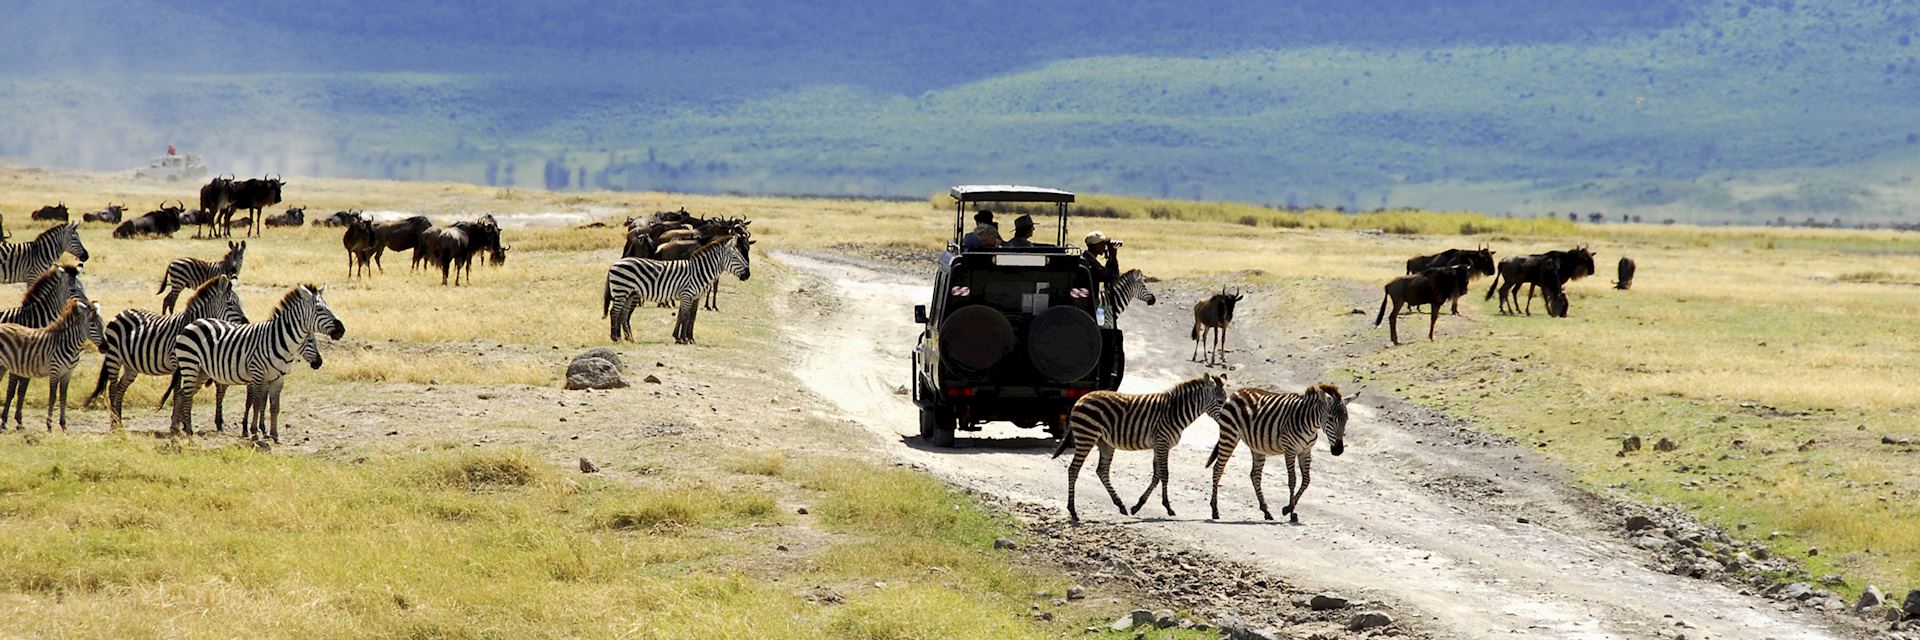 Safari drive in Tanzania